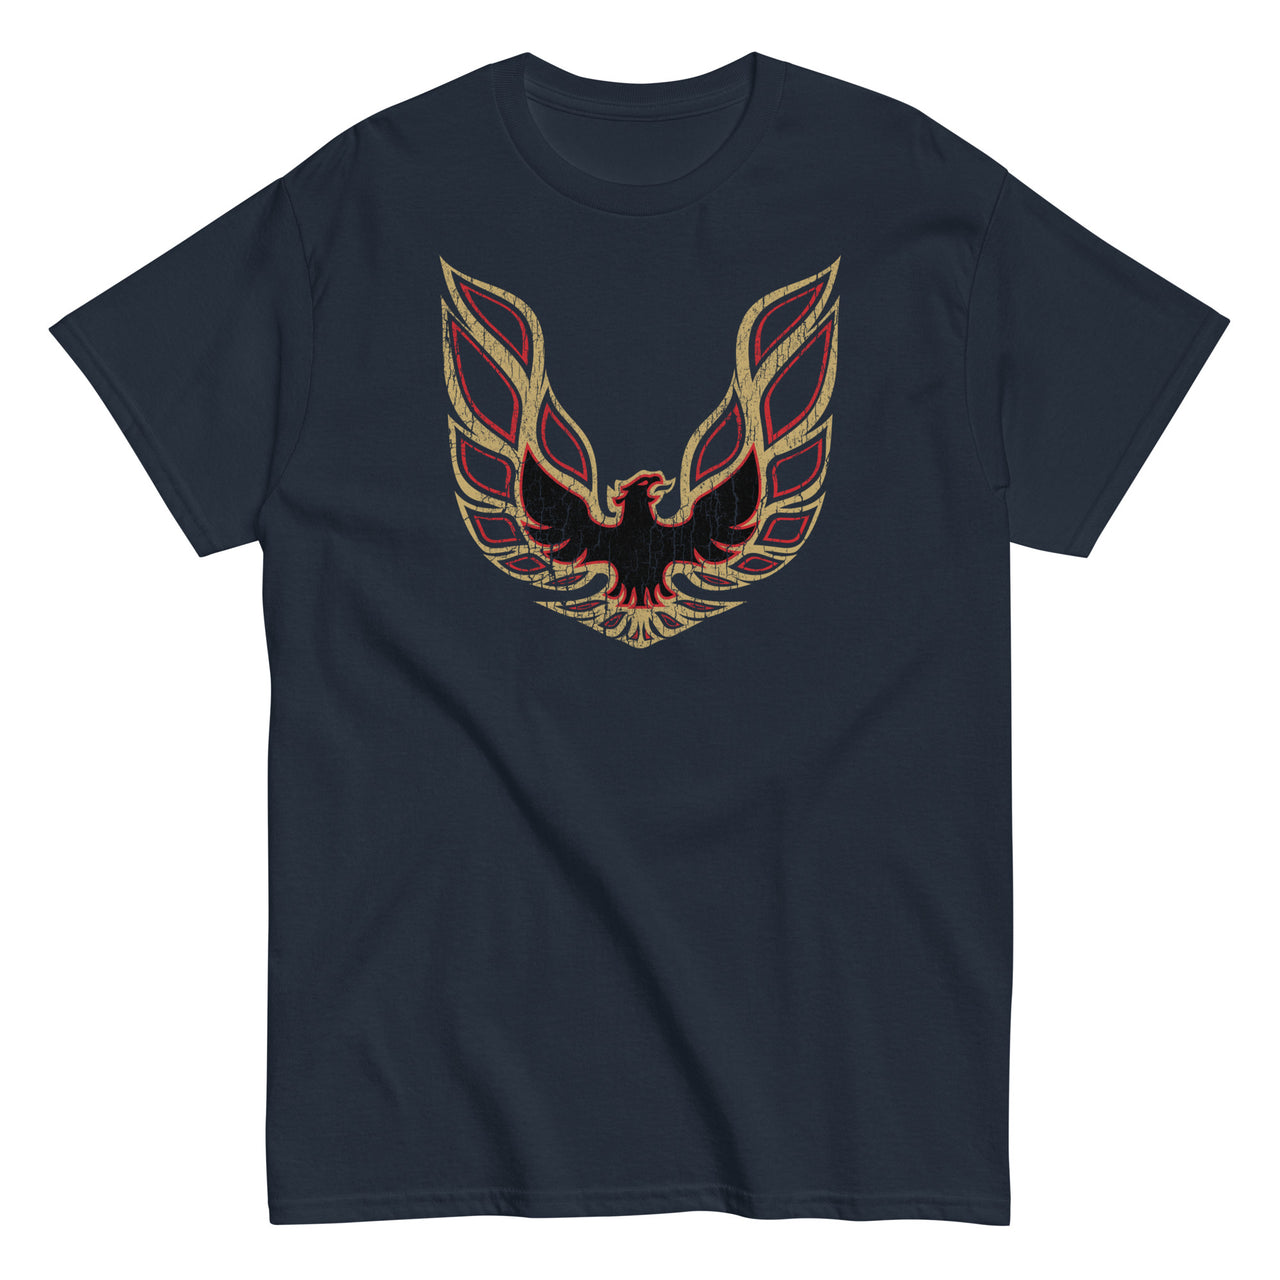 Traditional Trans Am Firebird Logo T-Shirt in navy